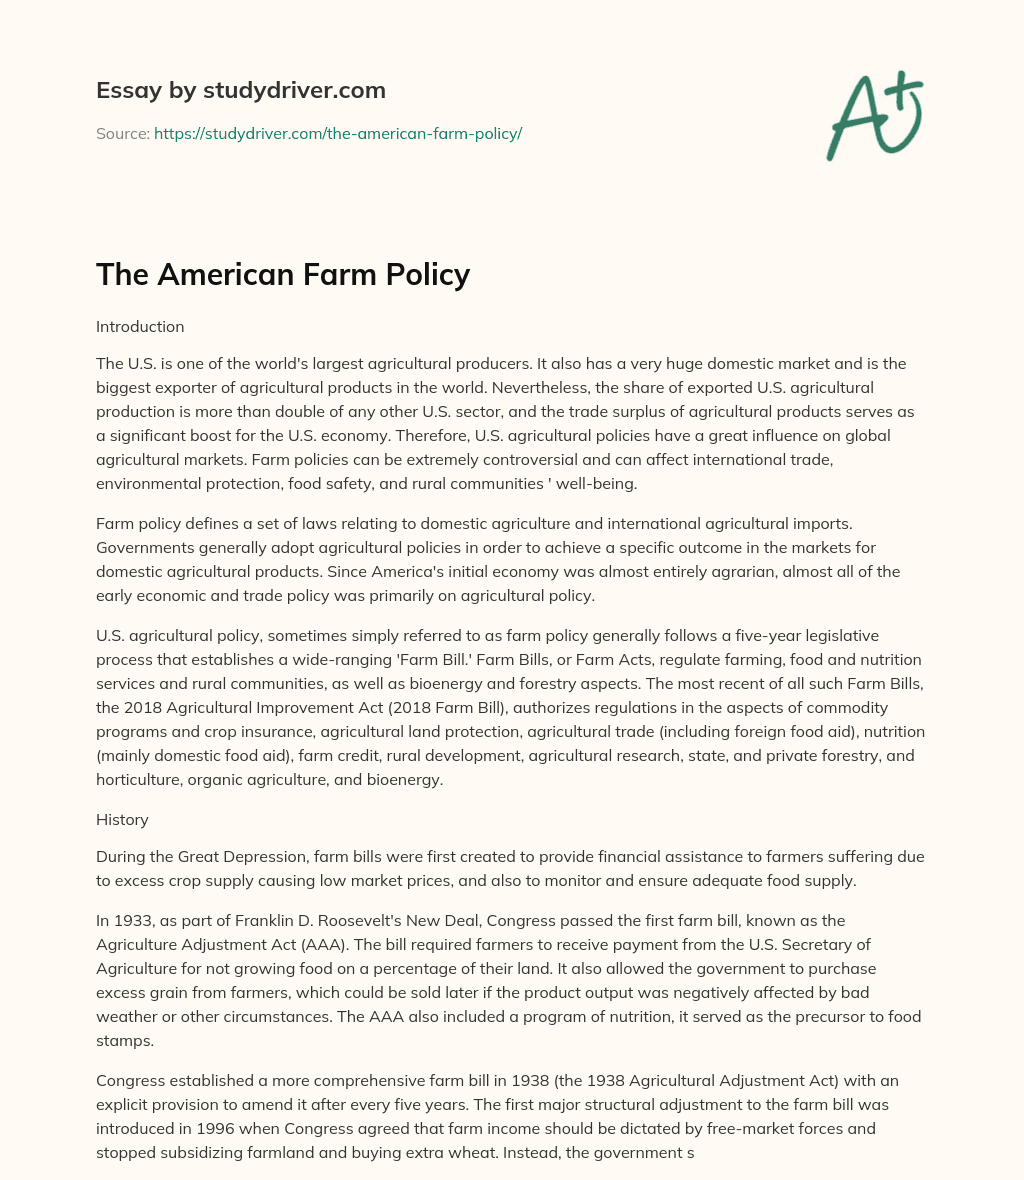 The American Farm Policy essay